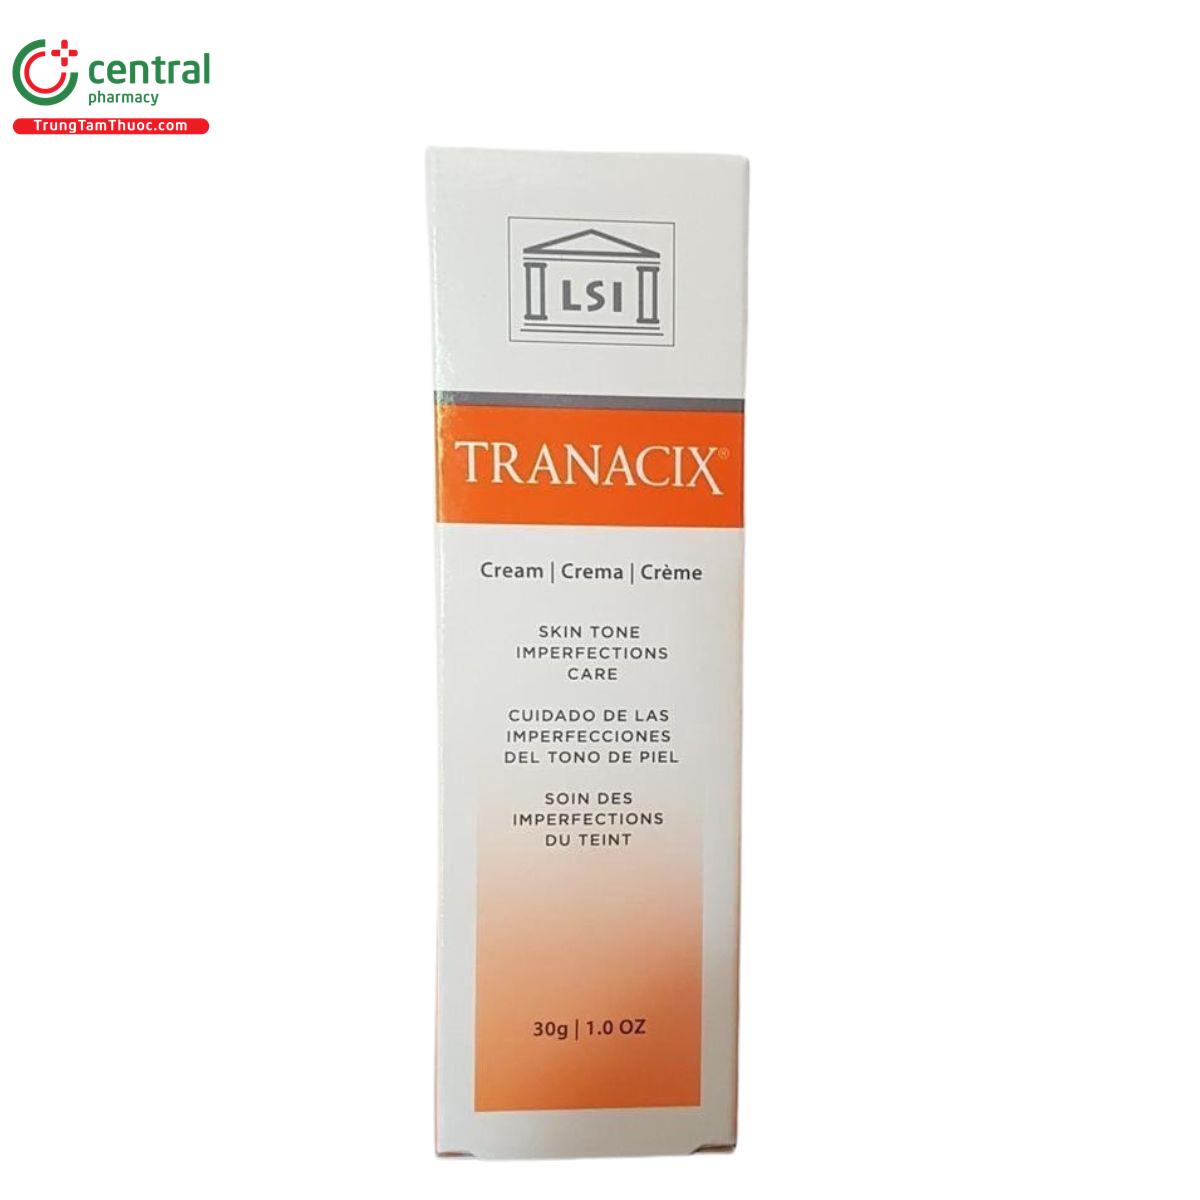 tranacix cream 5 U8740